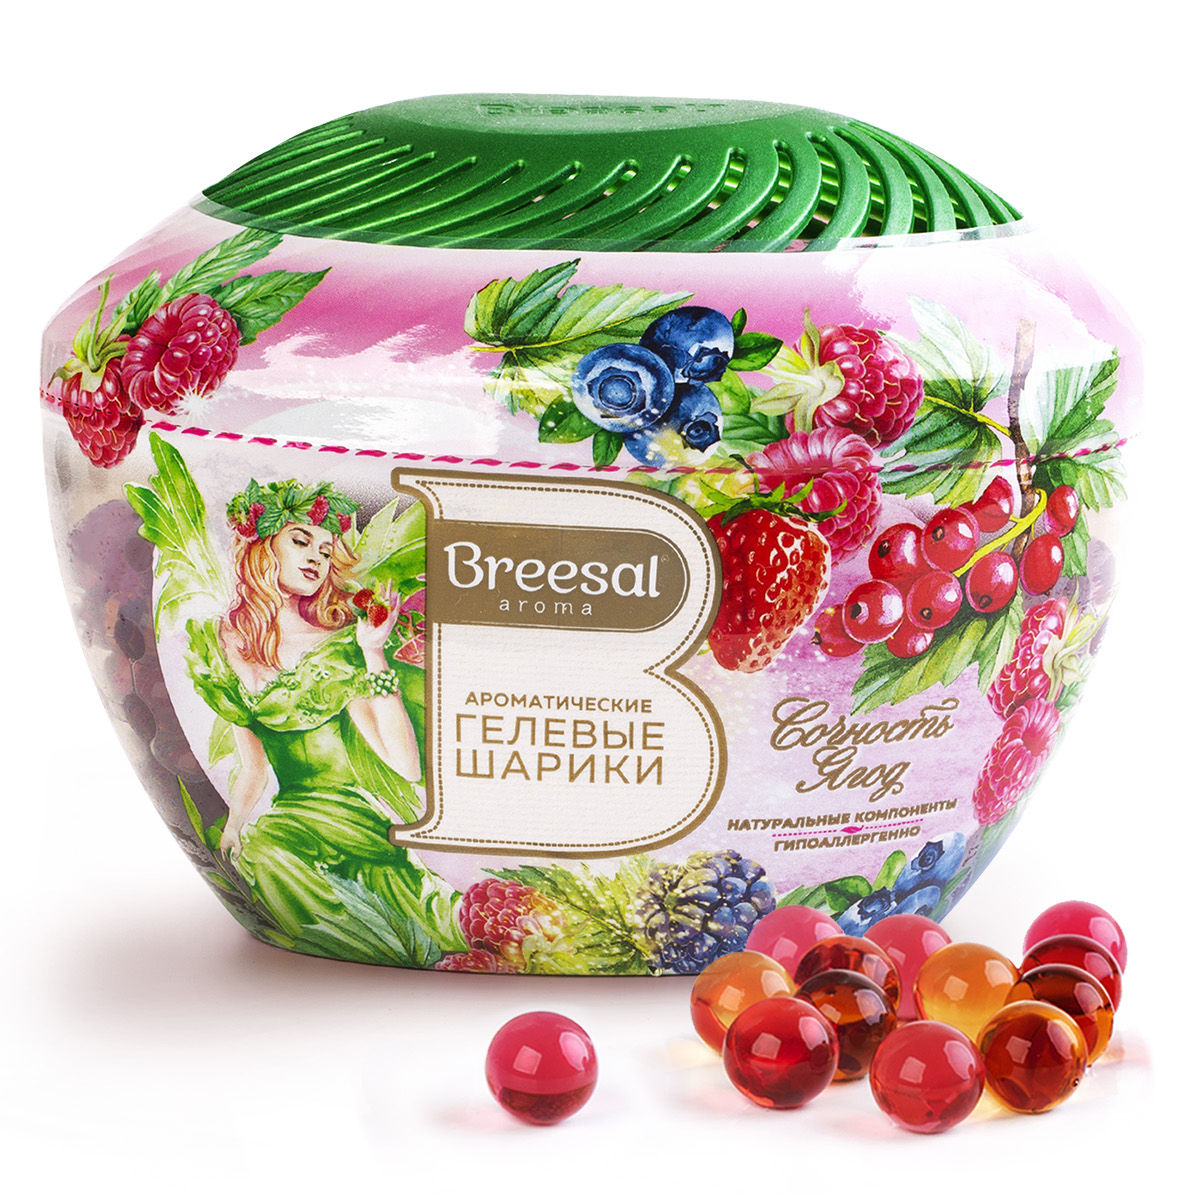 Ароматические гелевые шарики Breesal Fresh Drops Сочность ягод, 215 мл пеленки угольные шестислойные гелевые для животных 60 х 60 см 5 шт